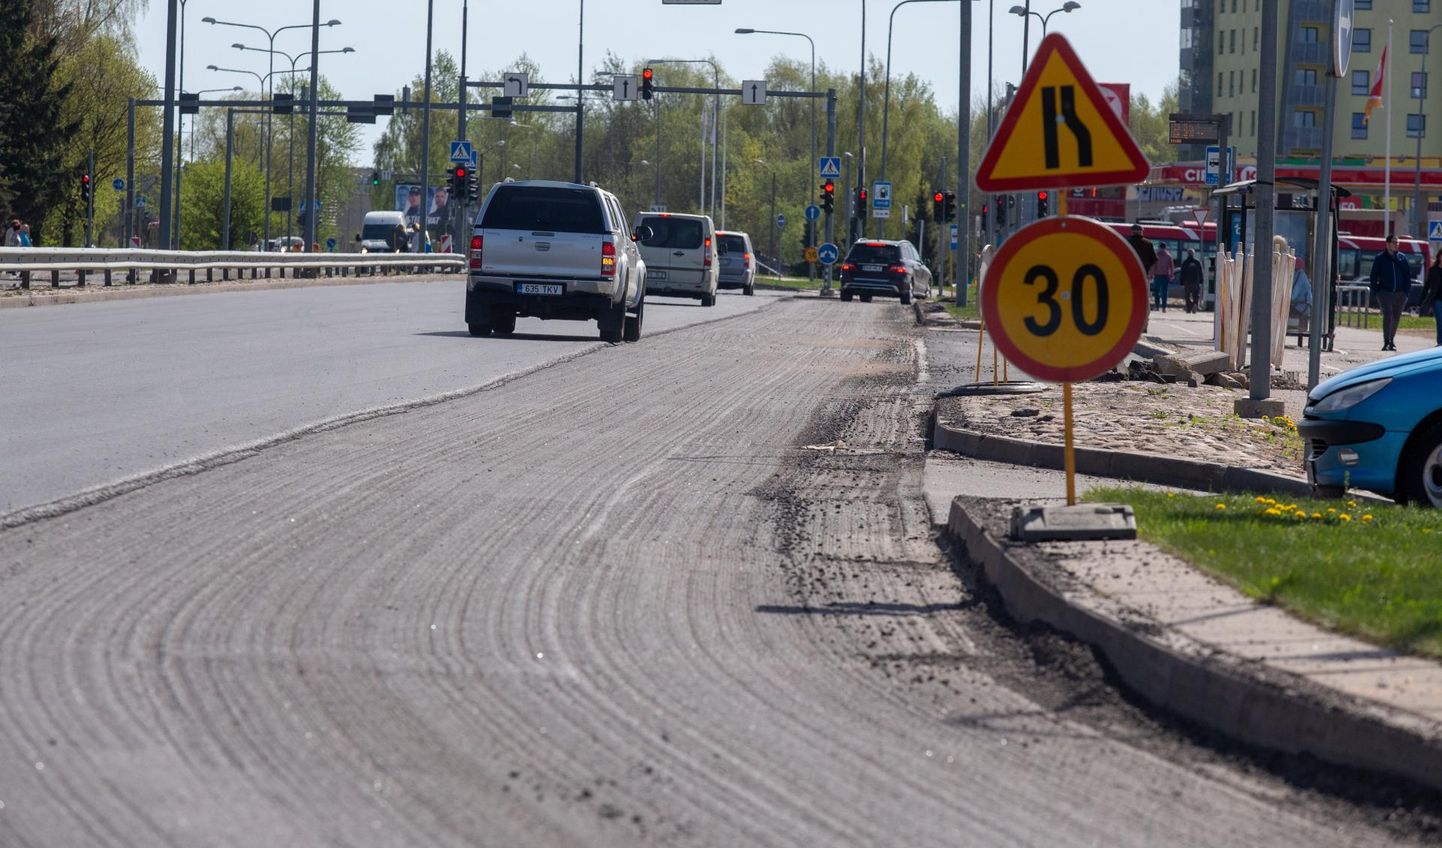 Sõpruse ringile ja Kalda teele peaks uus asfalt saama pandud 1. maiks, lubab tee-ehitaja.